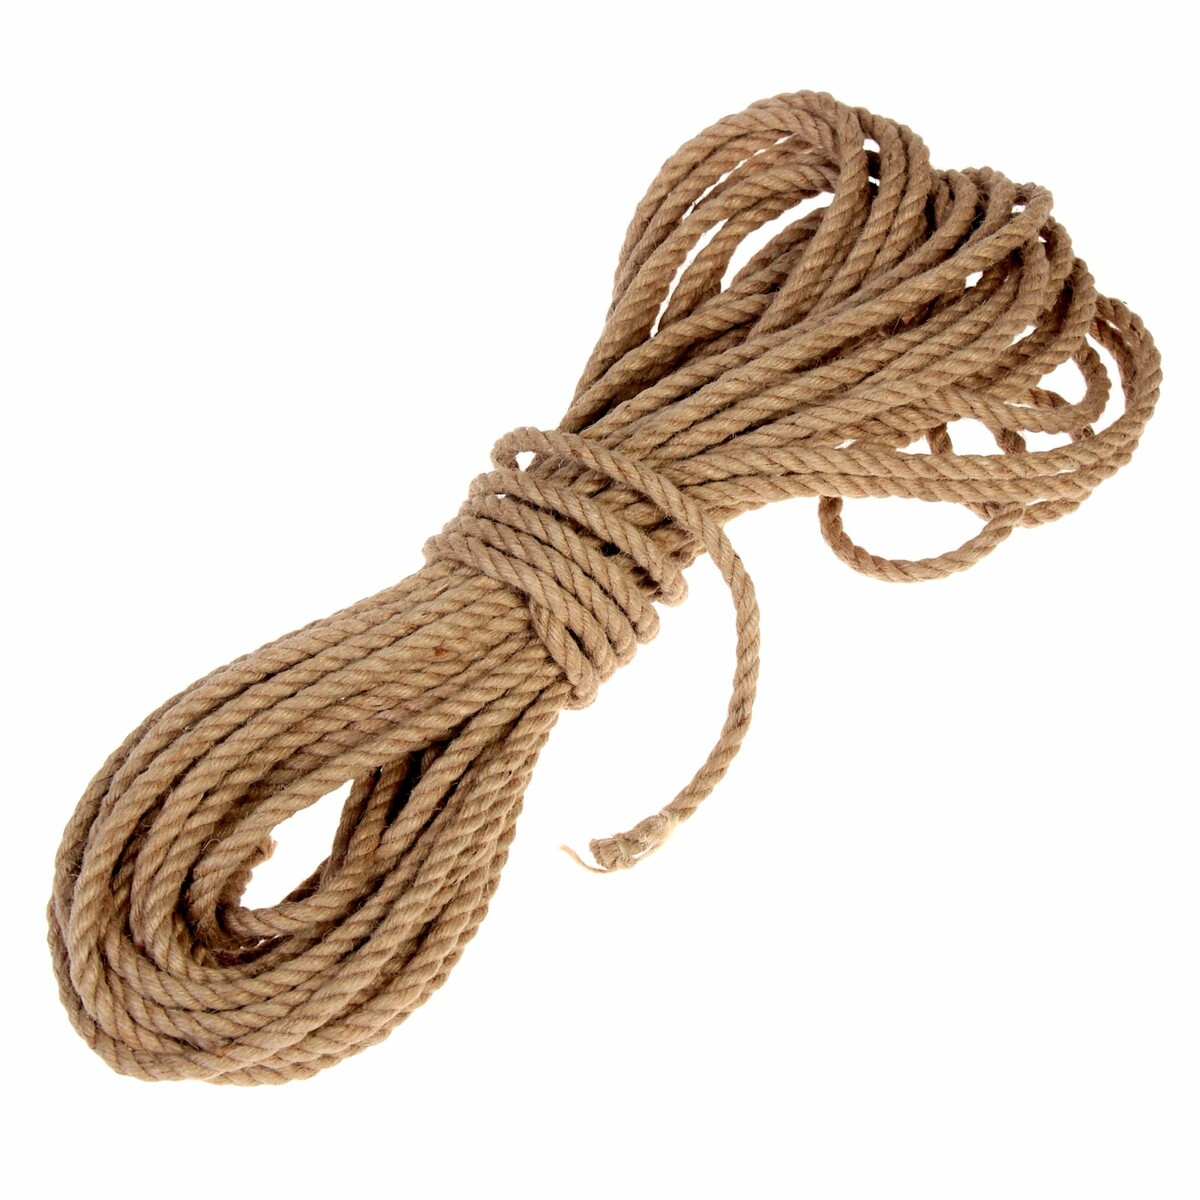 Канат джутовый крученый 8 мм, локоть (20 м) тренировочный канат live pro battle rope nl lp8170 s1 00 00 00 3 8 см x 9 м